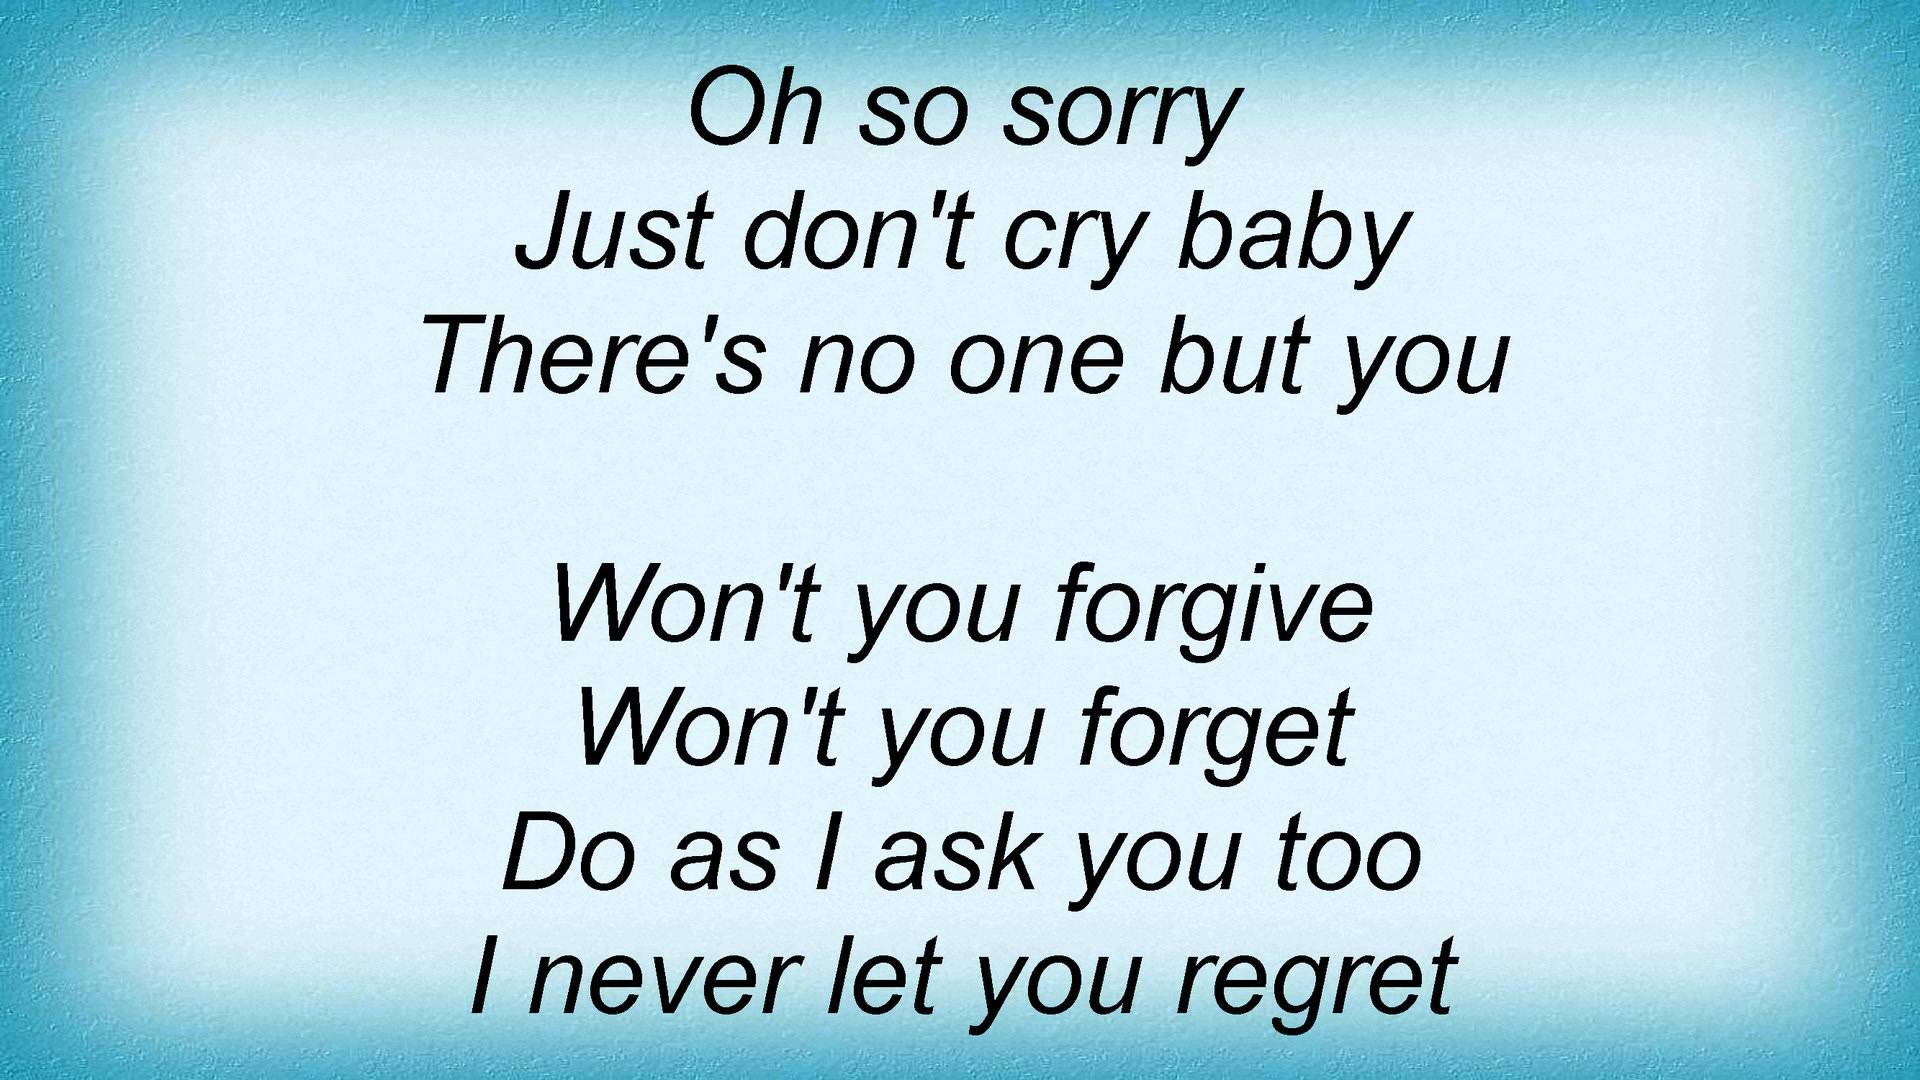 Madeleine Peyroux - Don't Cry Baby Lyrics - YouTube